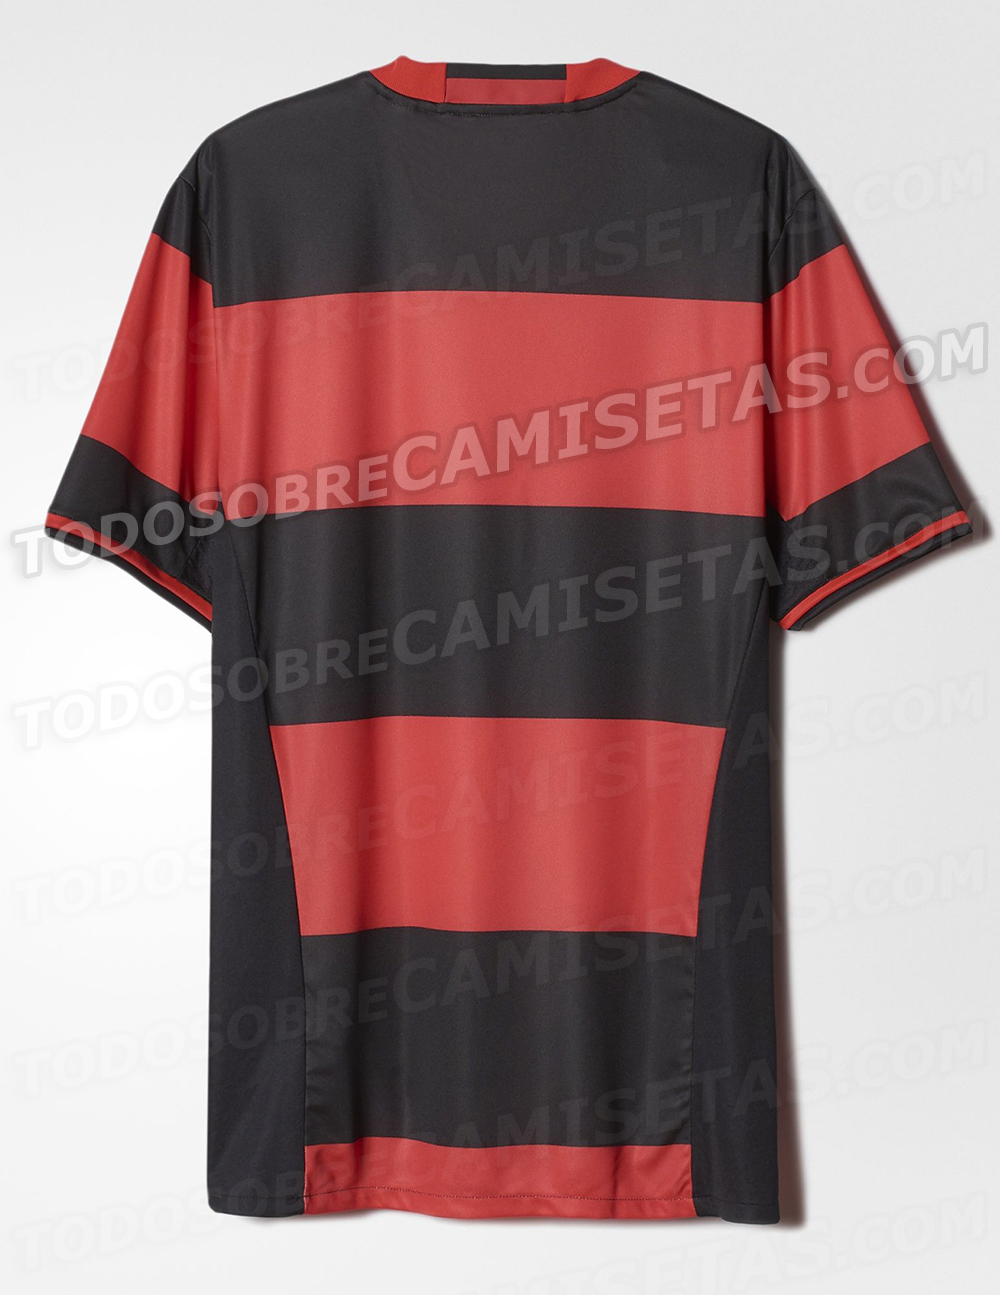 Camisa adidas do Flamengo 2016